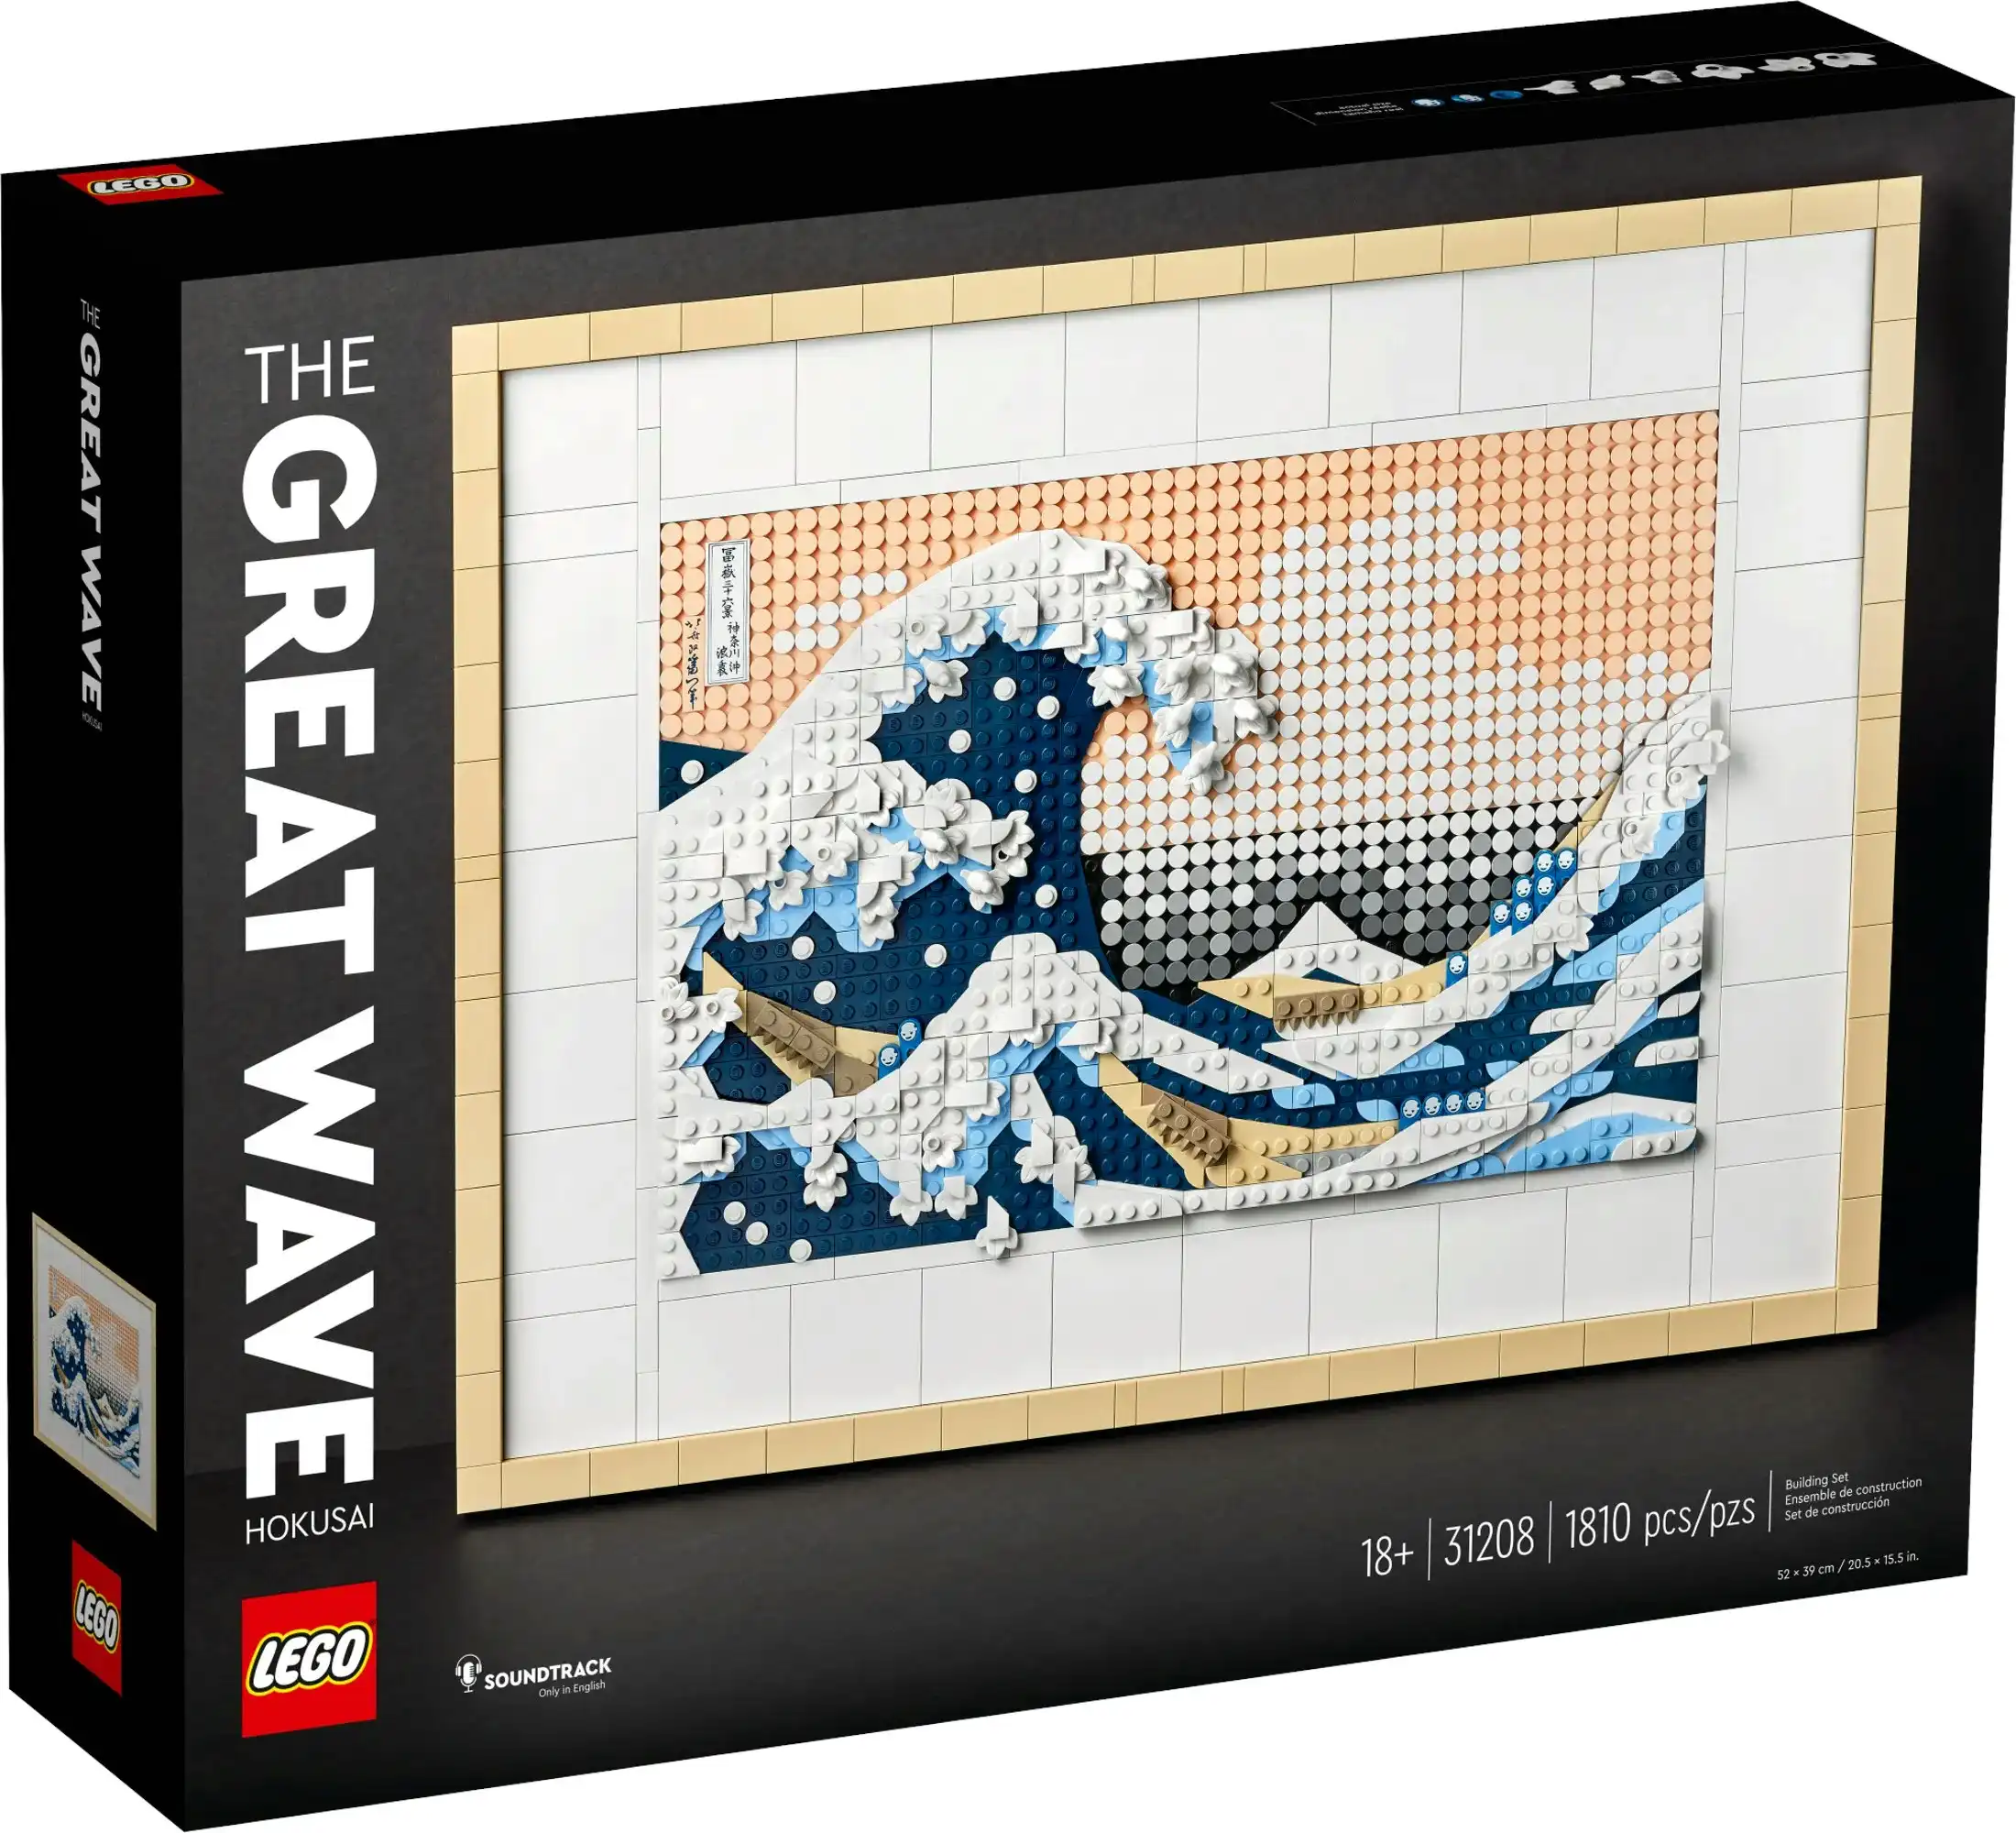 LEGO 31208 Hokusai - The Great Wave - Art